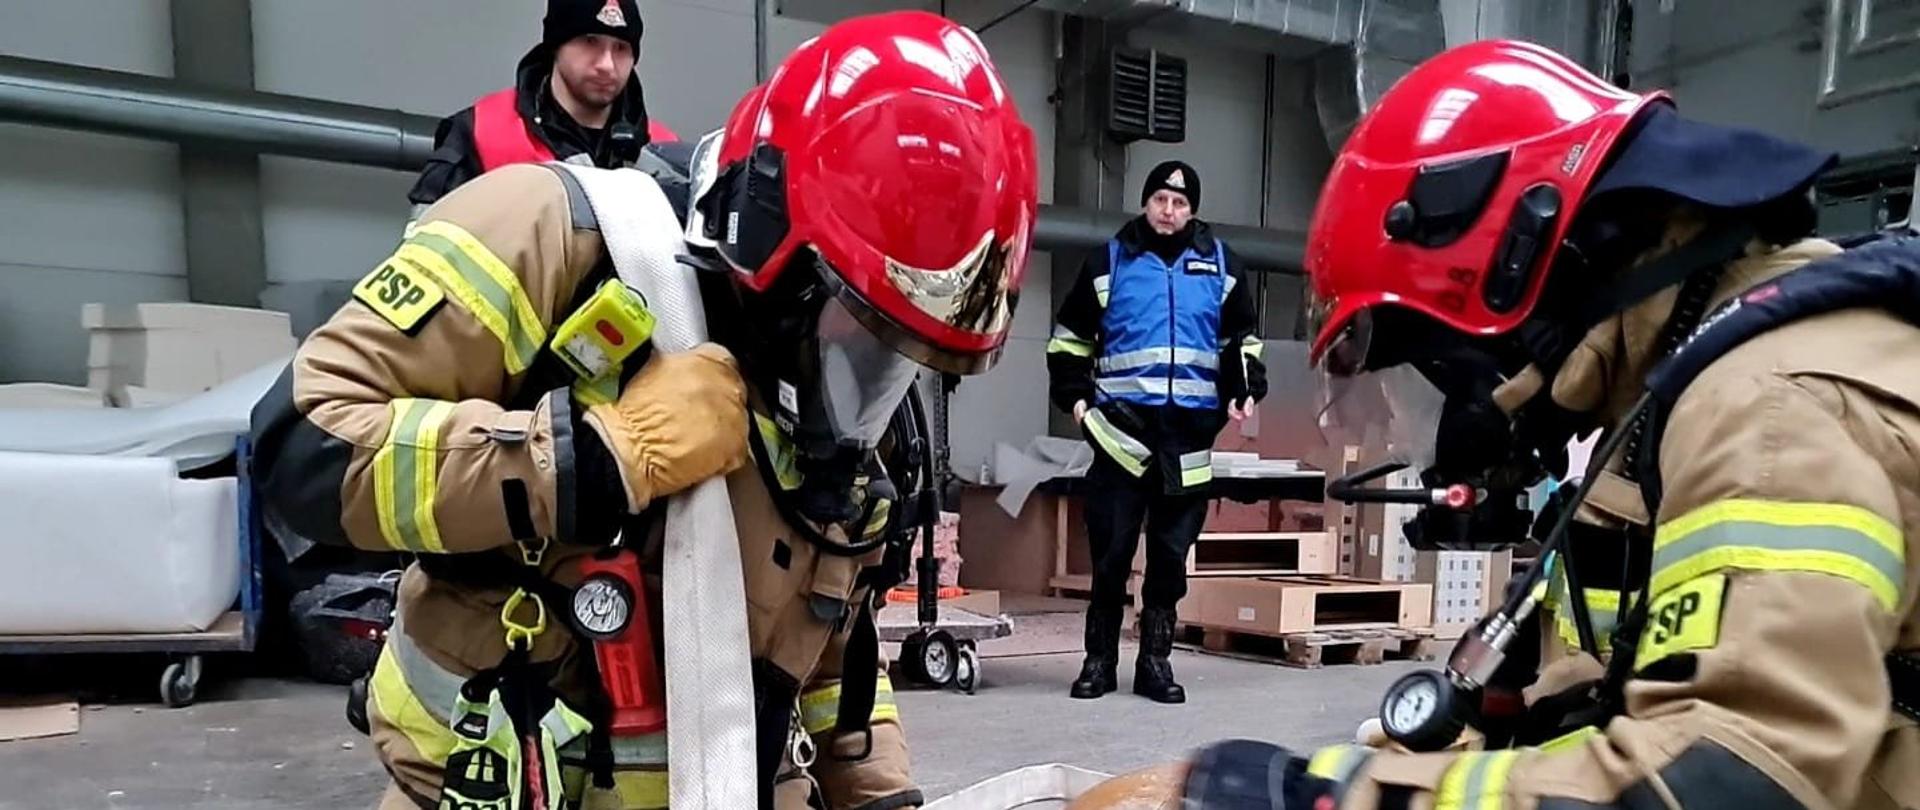 Strażacy ewakuują manekina, poruszając się na kolanach z przewieszoną linią wężową przez ramię. Strażacy ubrani w piaskowe ubranie specjalne i czerwony hełm.